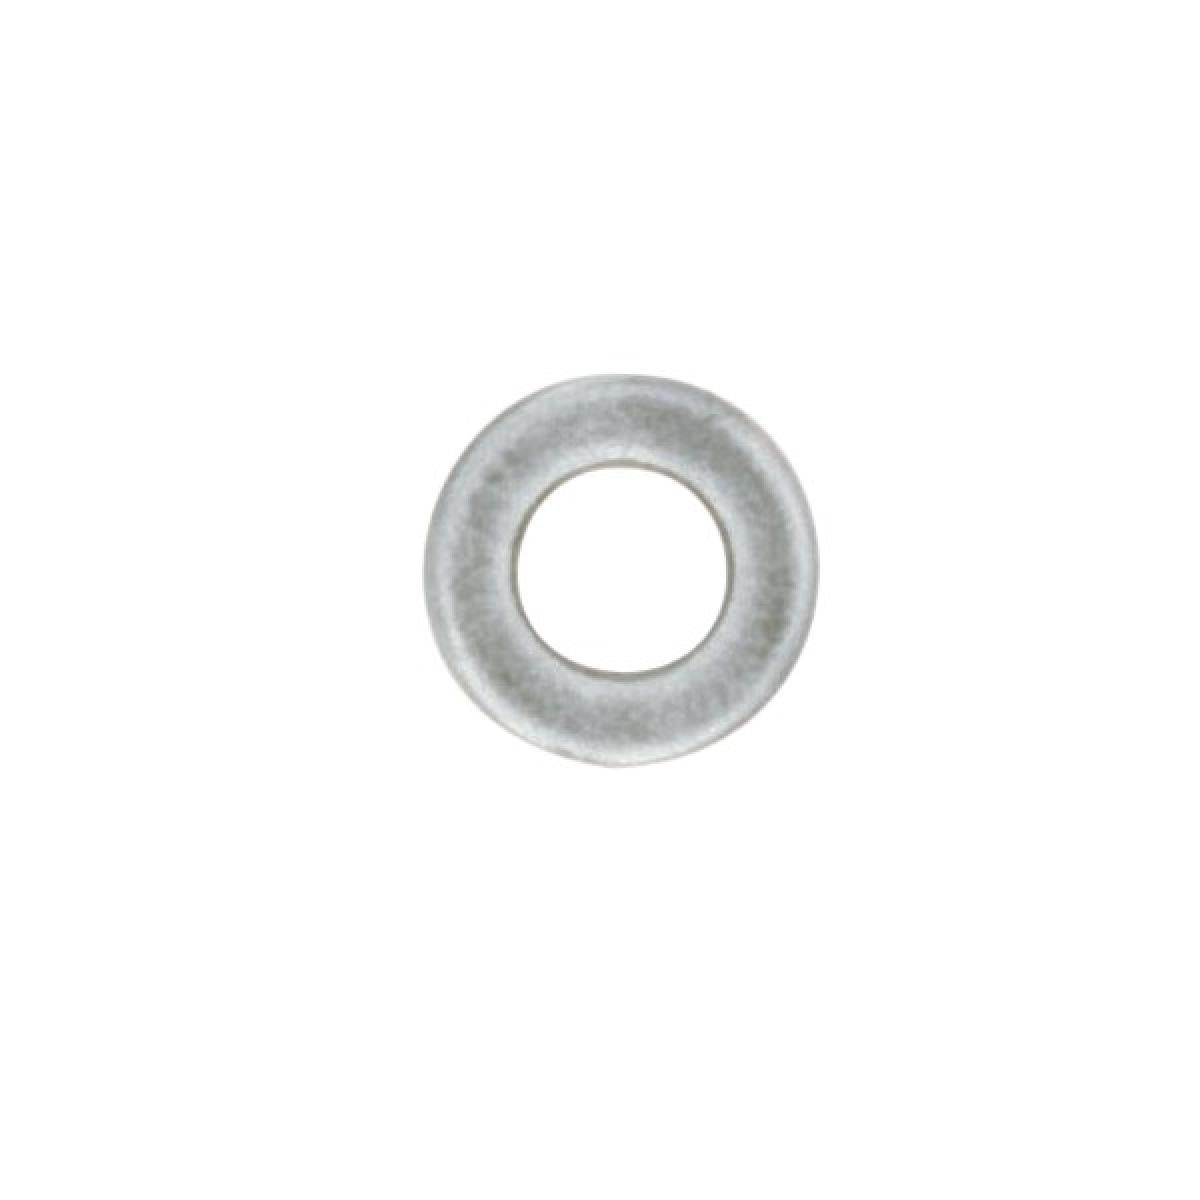 Satco 90-1298 Steel Washer 1/4 IP Slip 18 Gauge Unfinished 1-1/4" Diameter